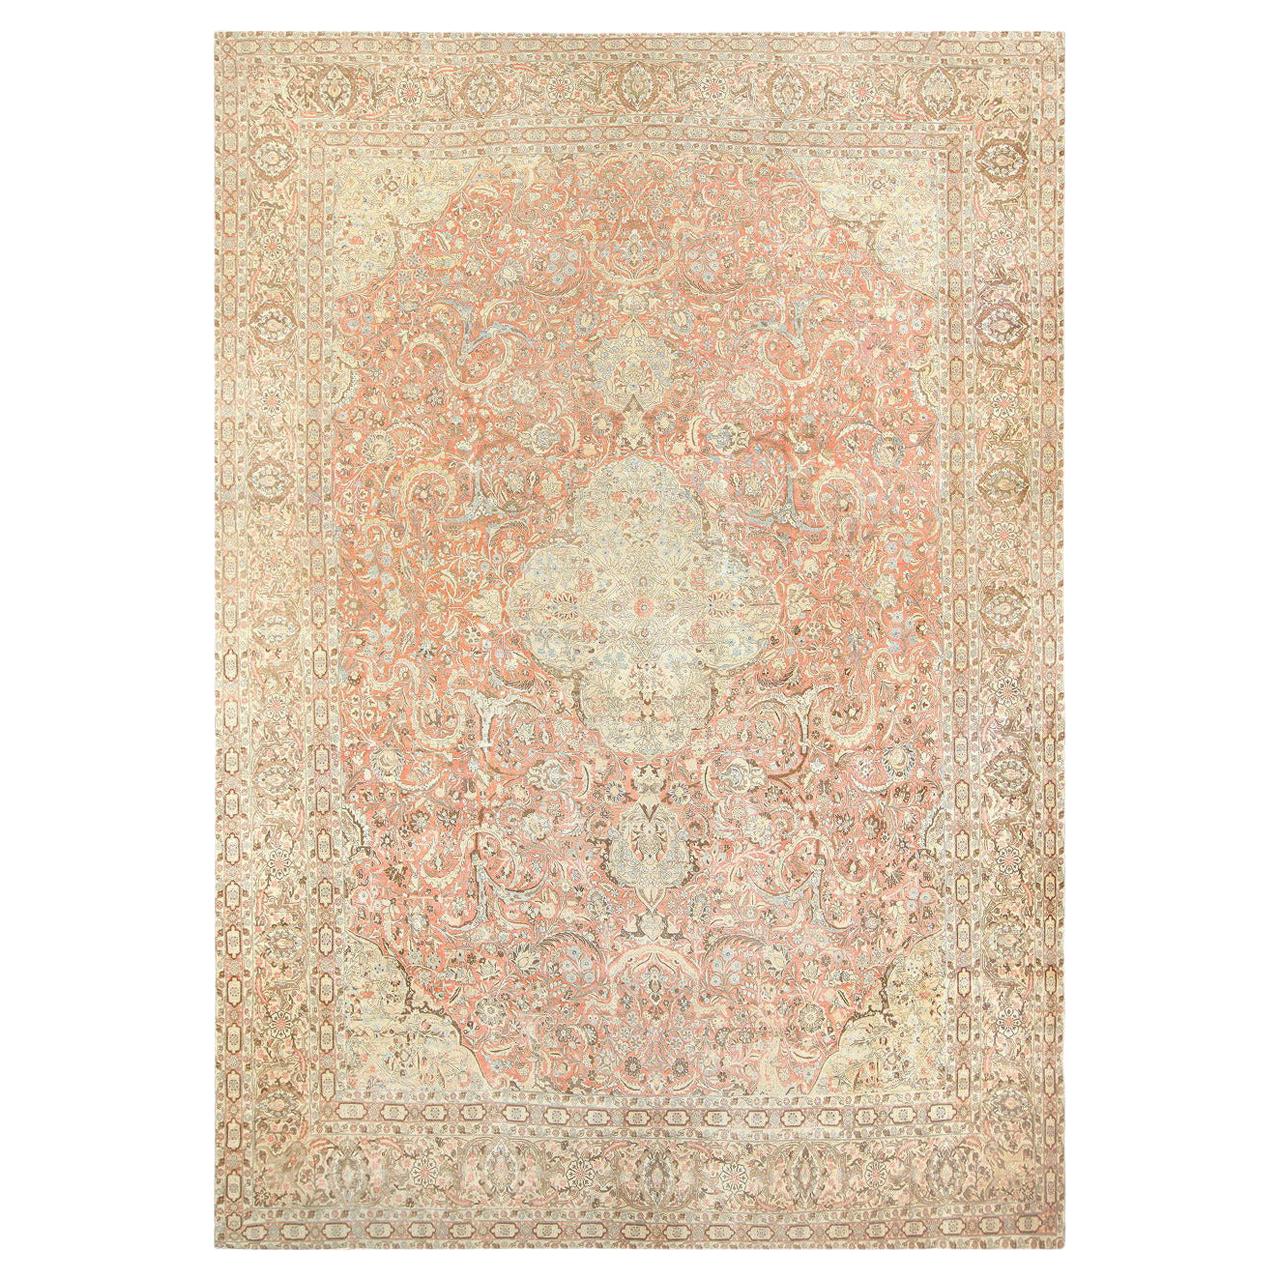 Antique Palace Size Persian Tabriz Carpet. 18 ft x 25 ft